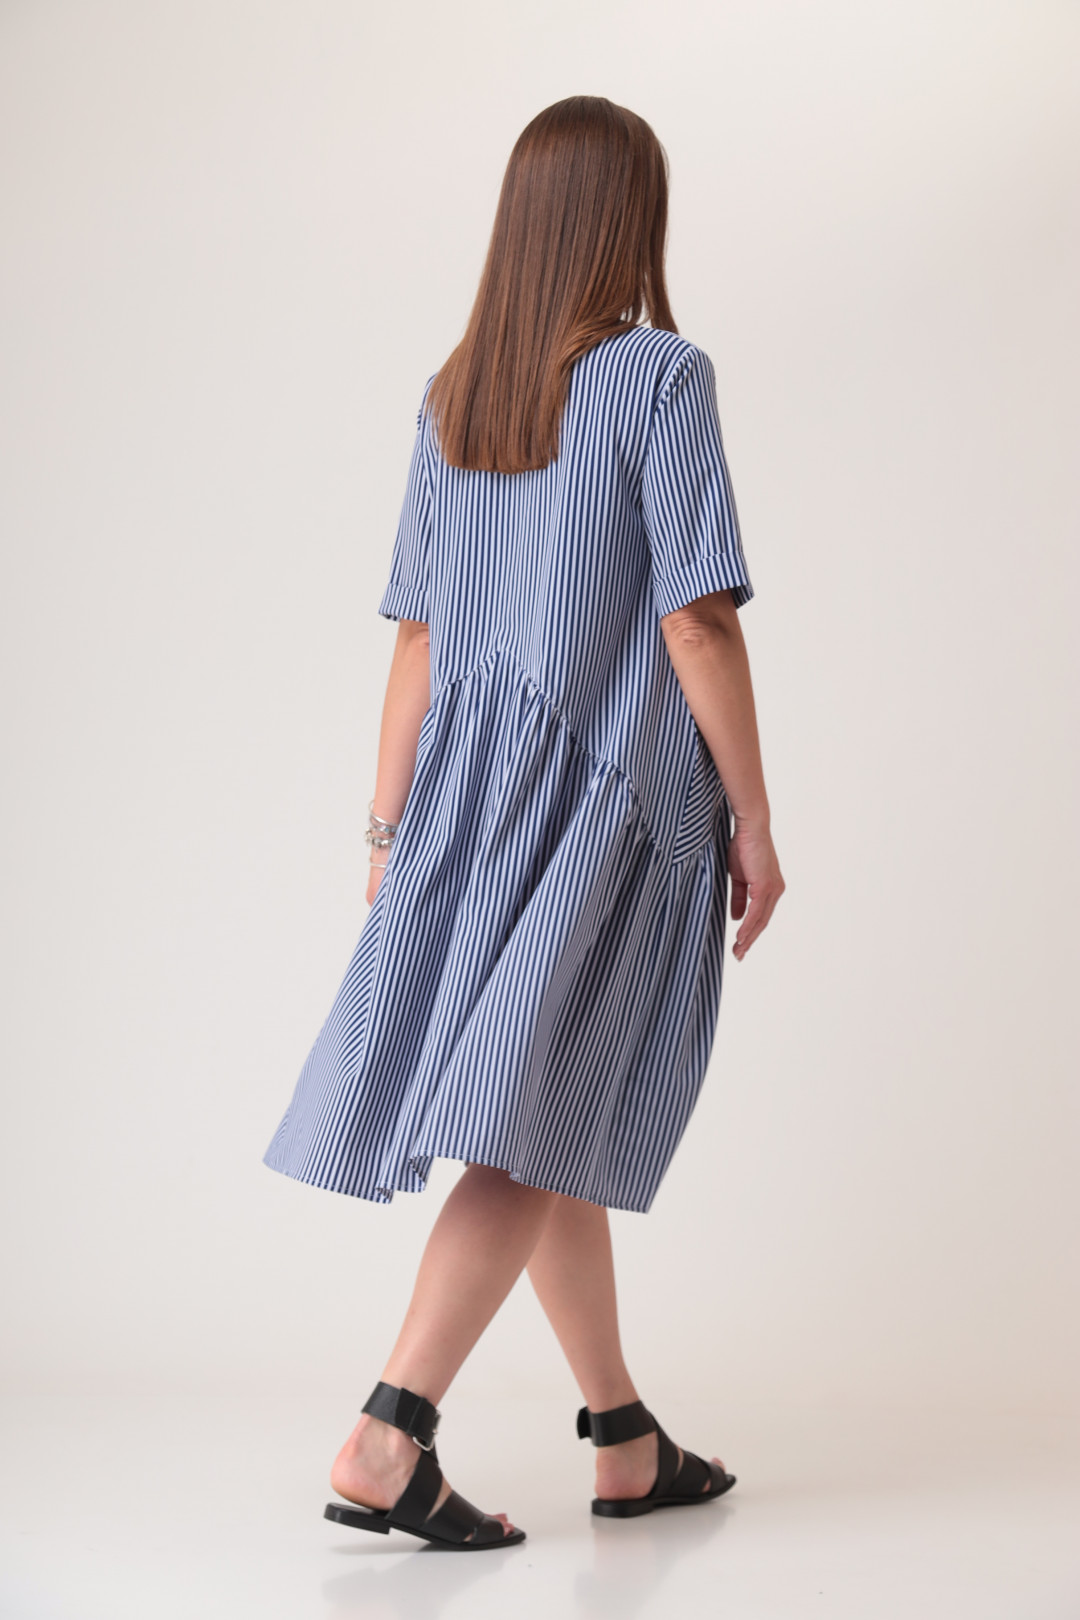 Платье ANASTASIA MAK 1032а полоска синяя